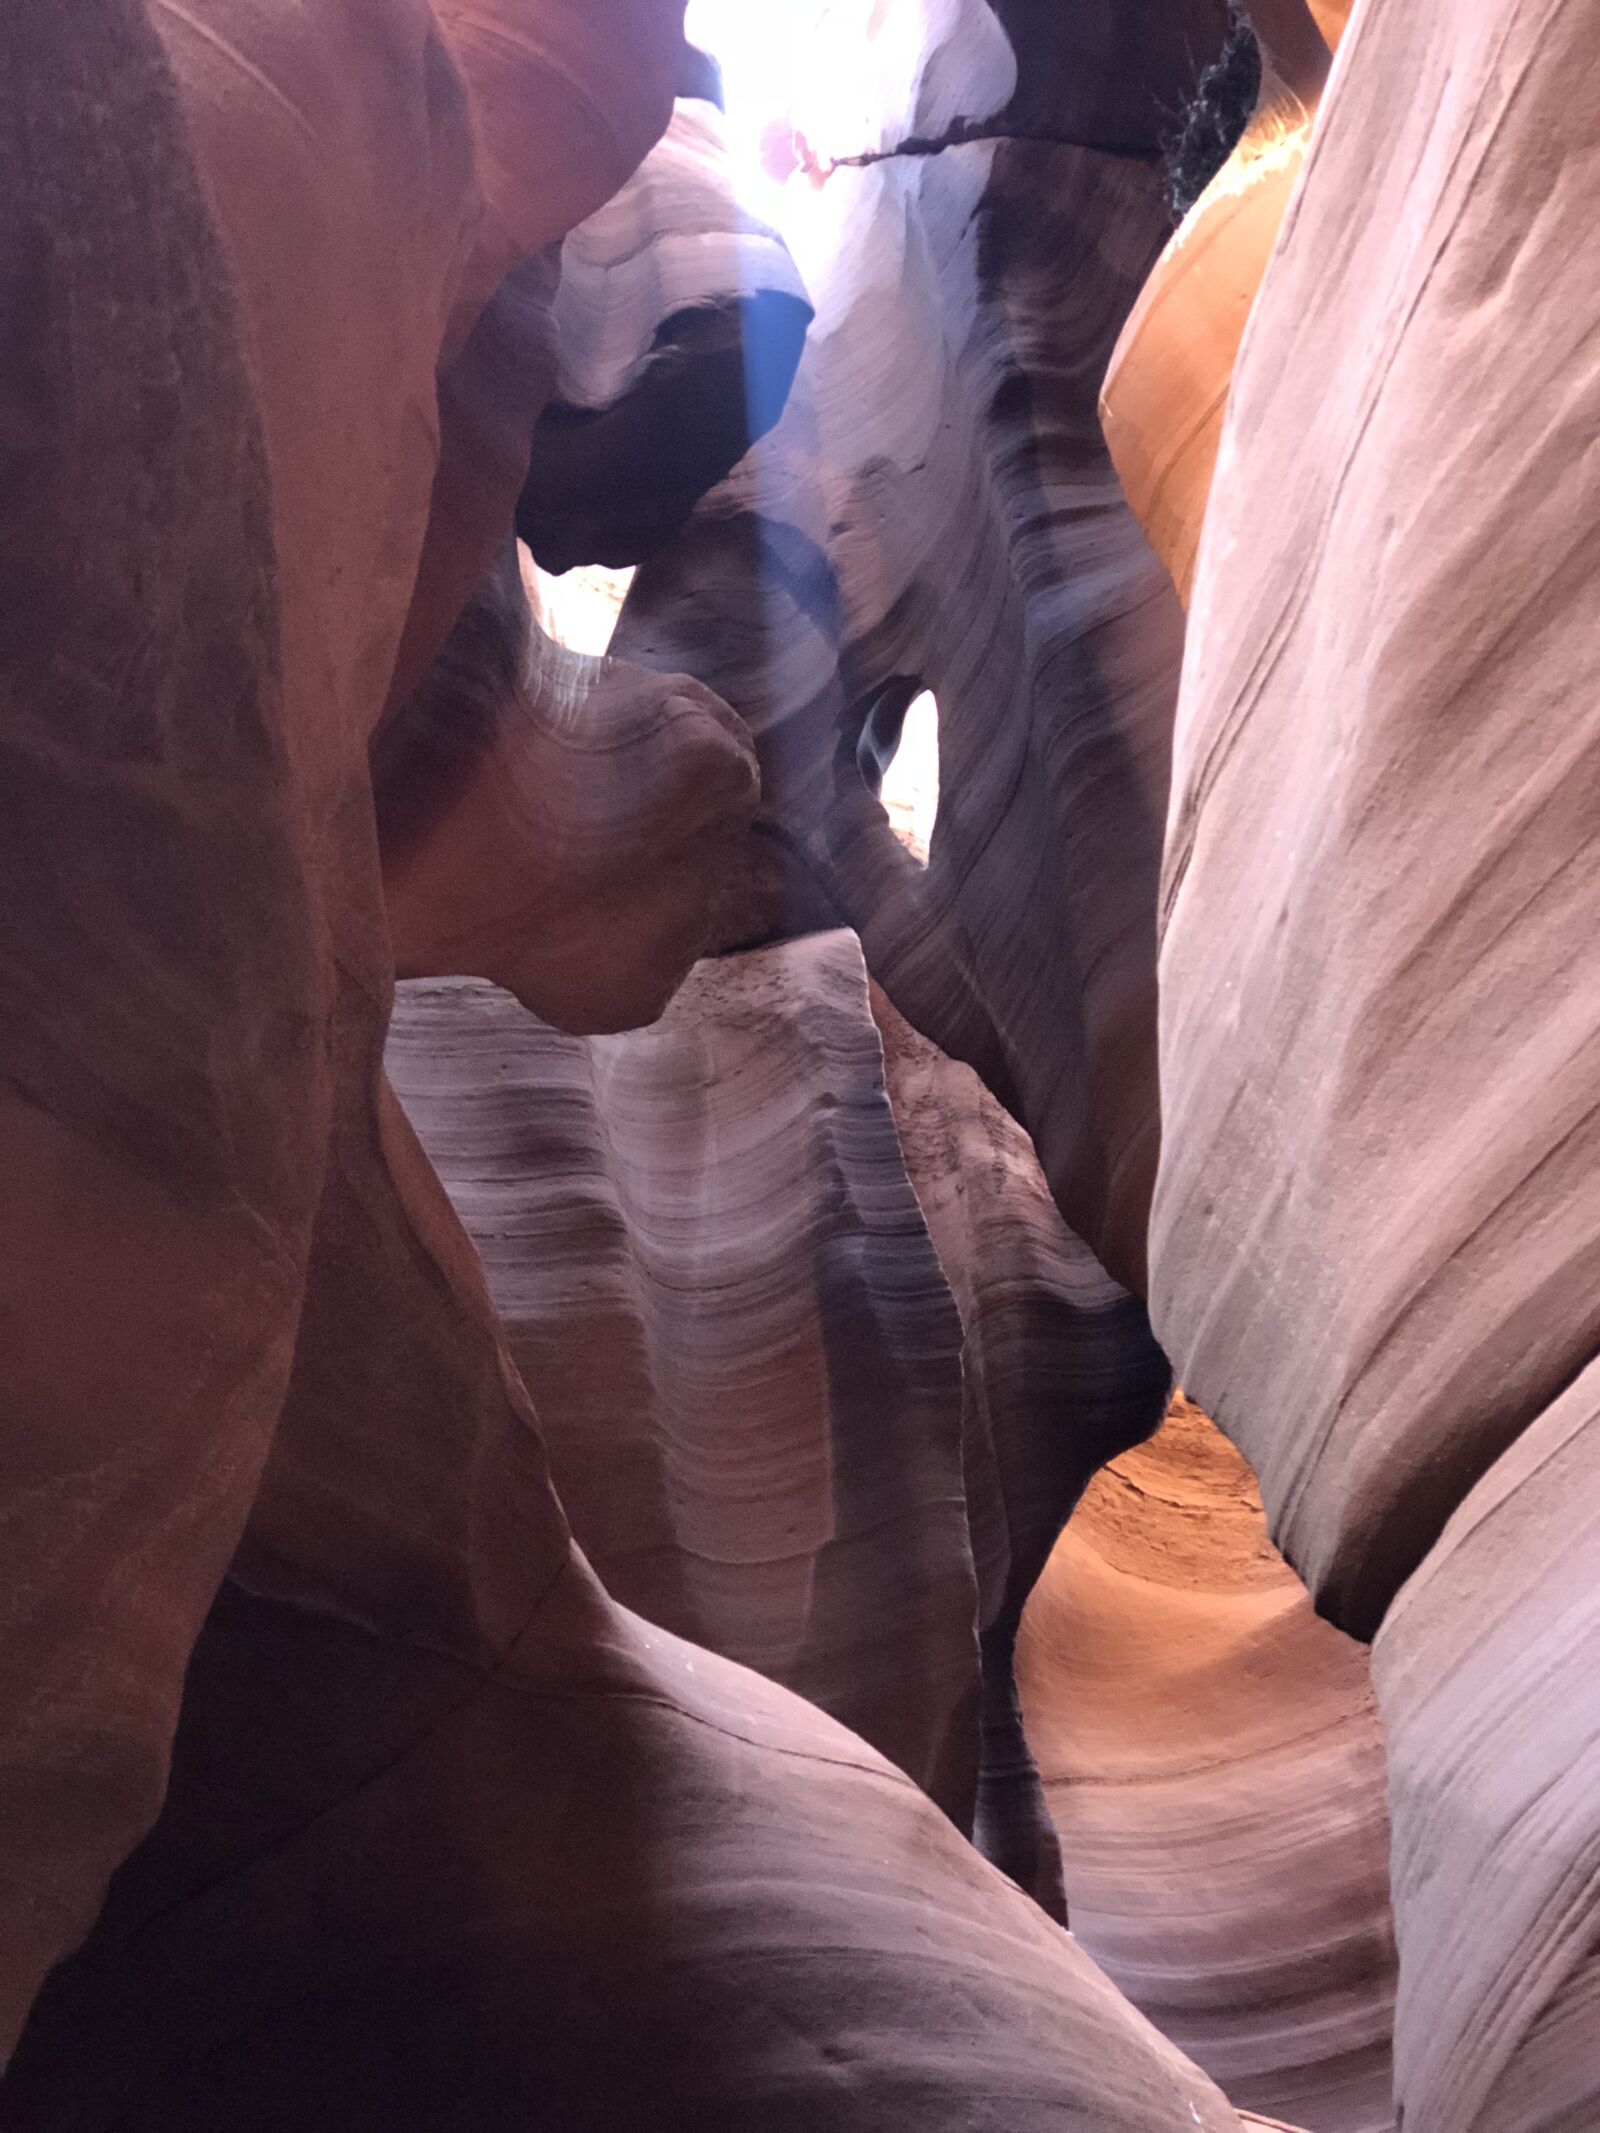 Apple iPhone 8 Plus sample photo. Antelope canyon, canyon, arizona photography